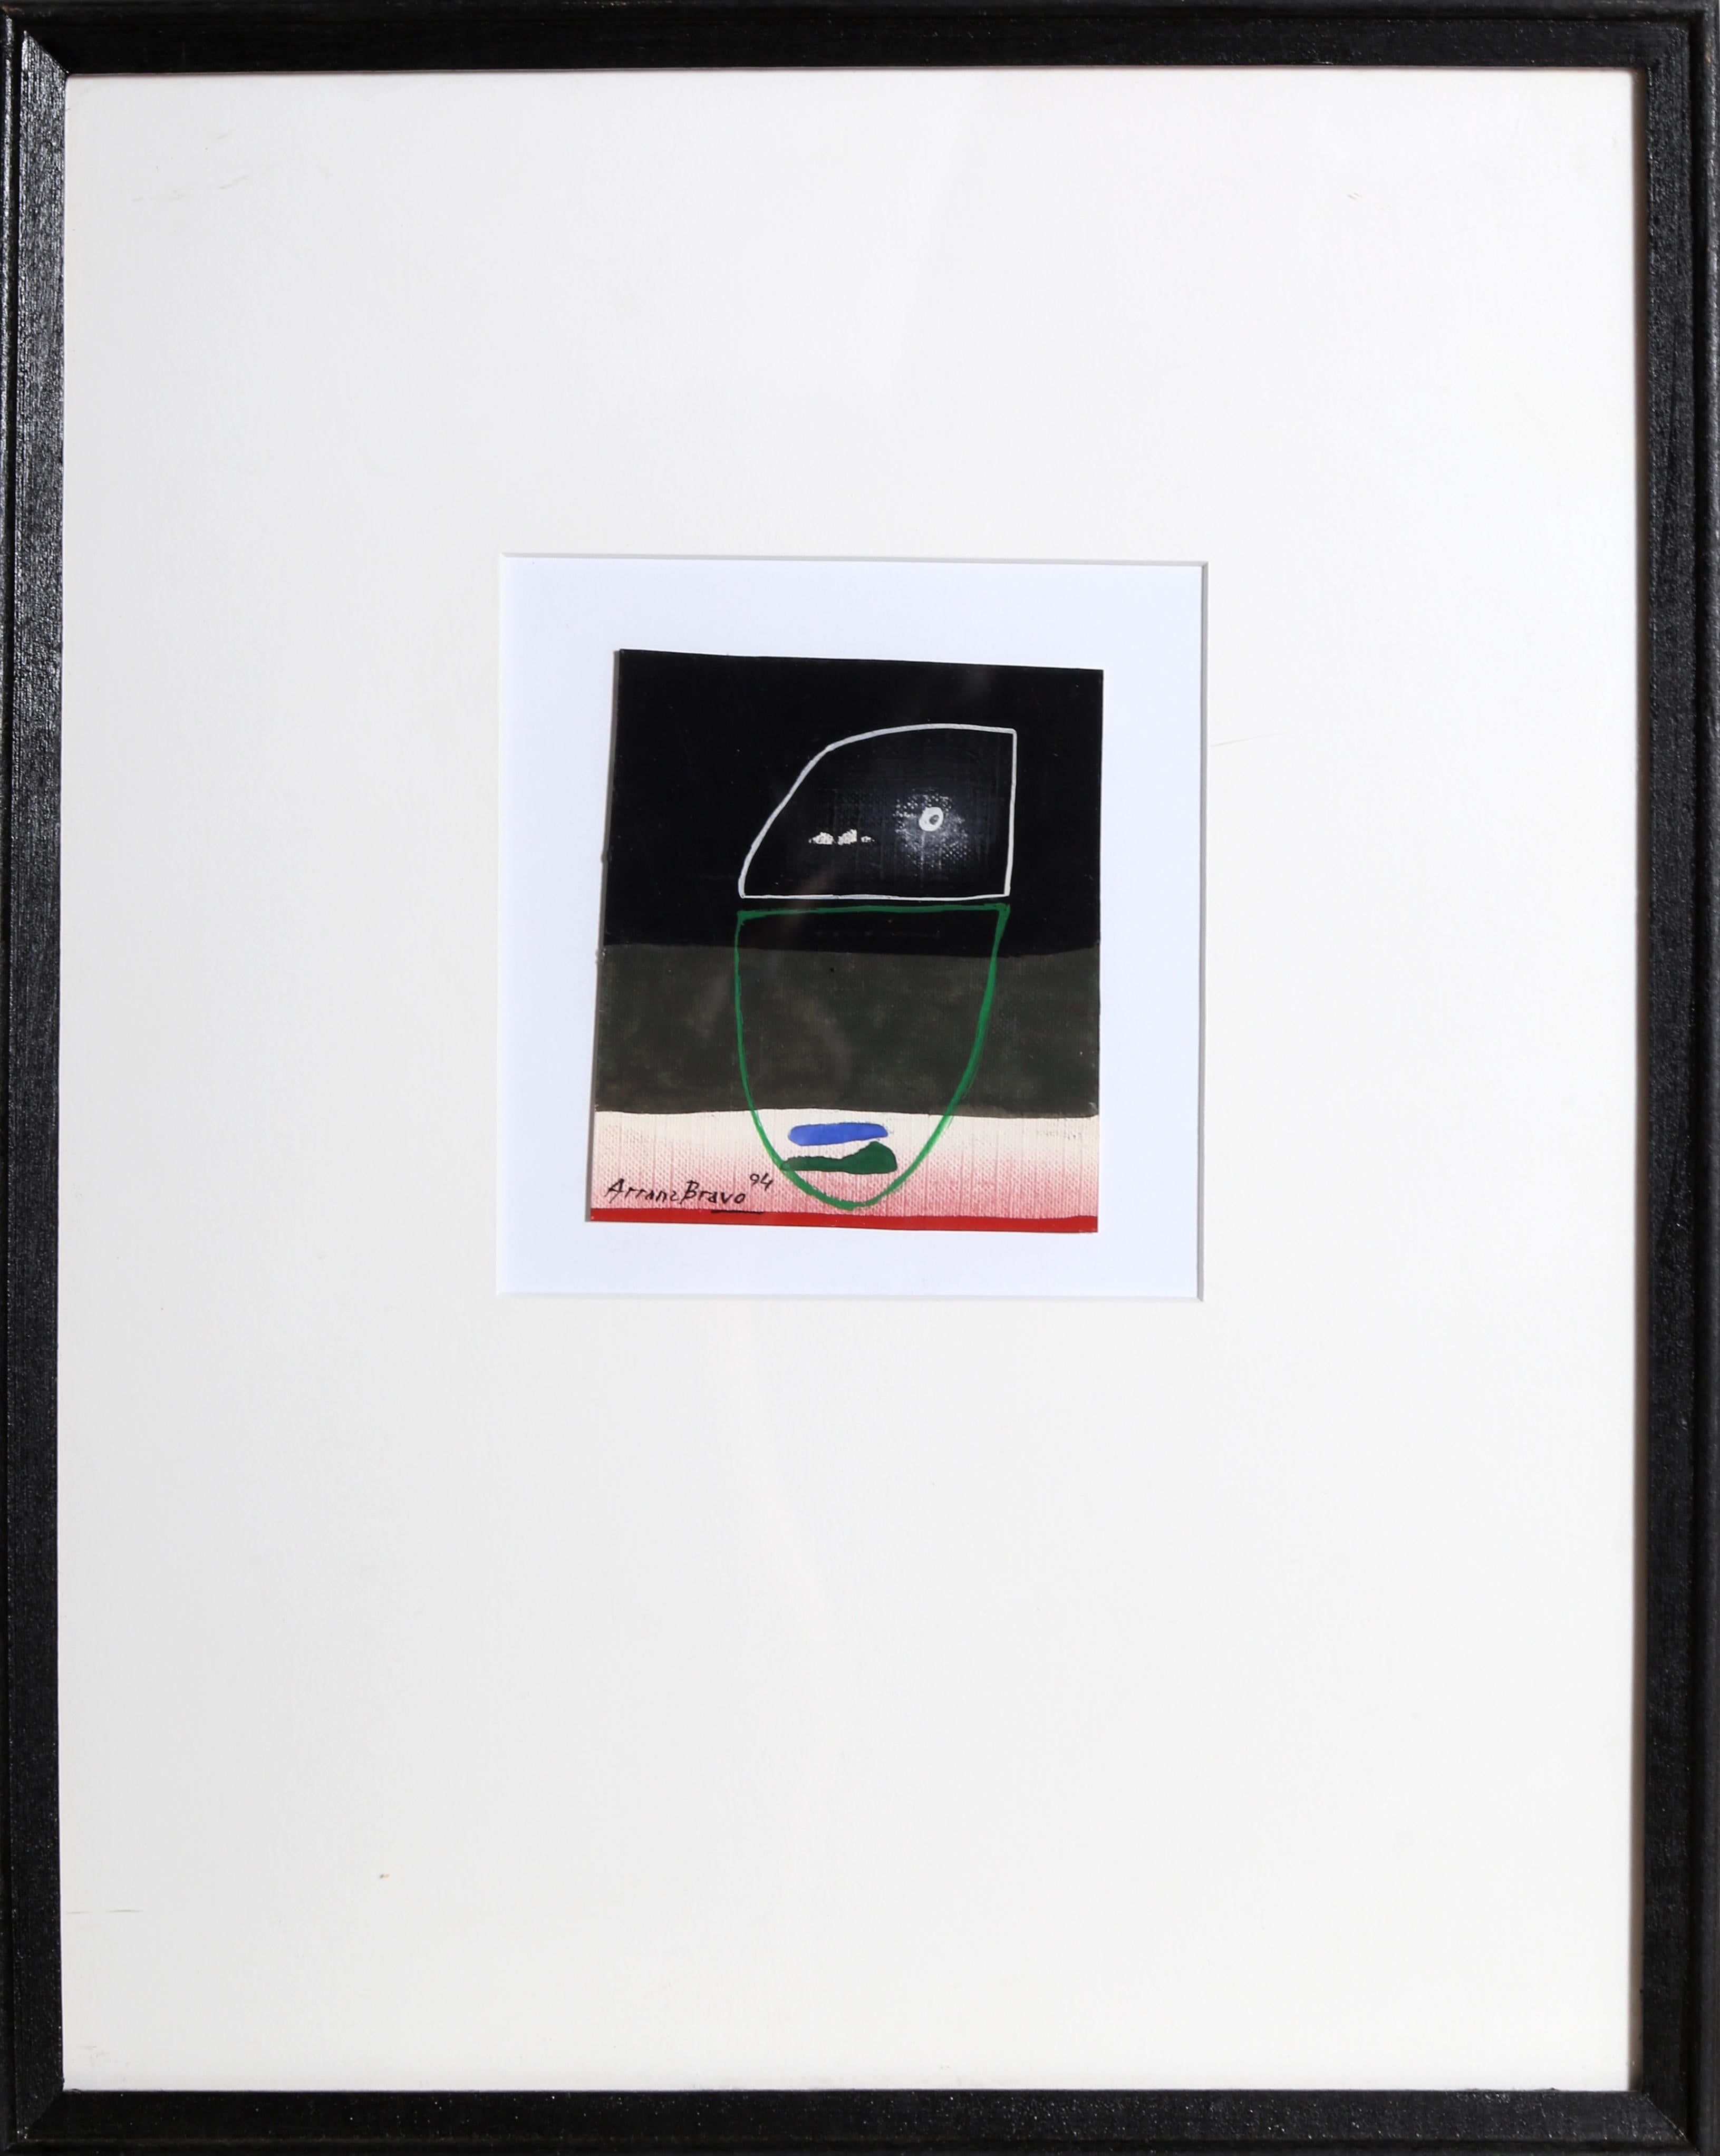 Abstraktes Mixed-Media-Kunstwerk des spanischen Künstlers Eduardo Arranz-Bravo.

Cadaques Nr.44
Eduardo Arranz-Bravo, Spanier (1941)
Datum: 1994
Mischtechnik auf Papier, signiert unten links
Größe: 4 x 3,5 Zoll (10,16 x 8,89 cm)
Rahmengröße: 14,75 x